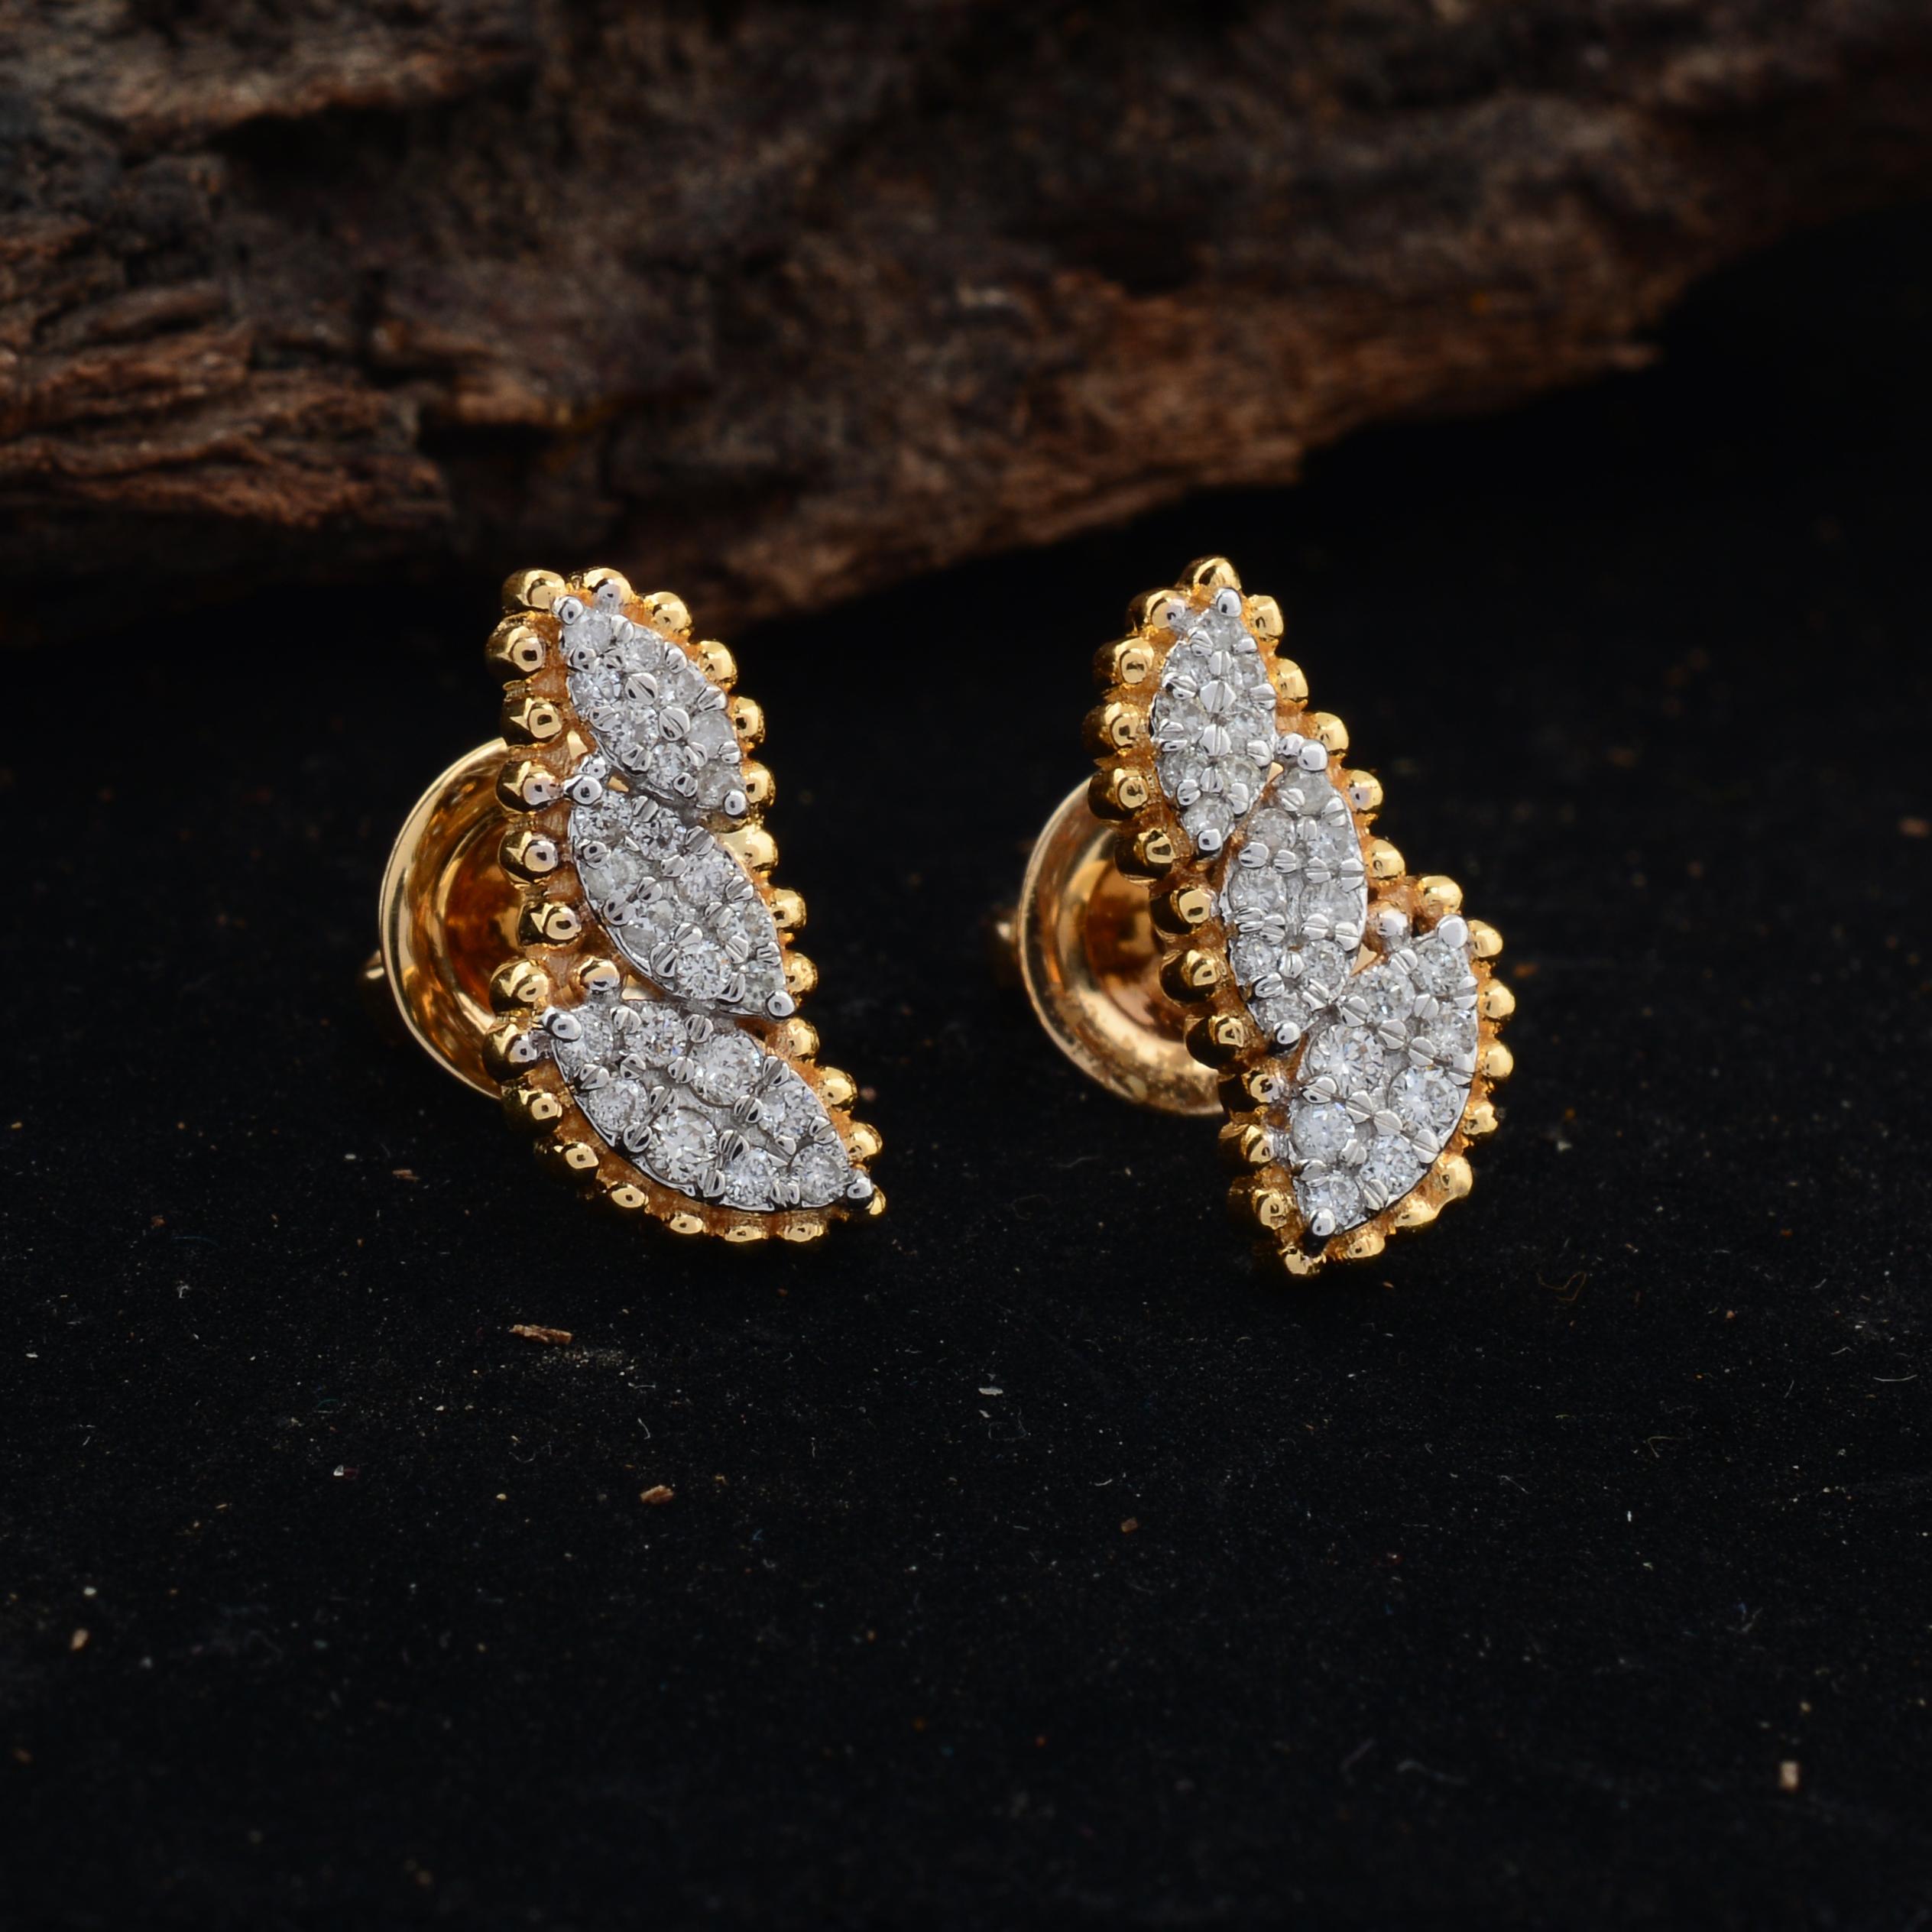 0.2 carat diamond stud earrings